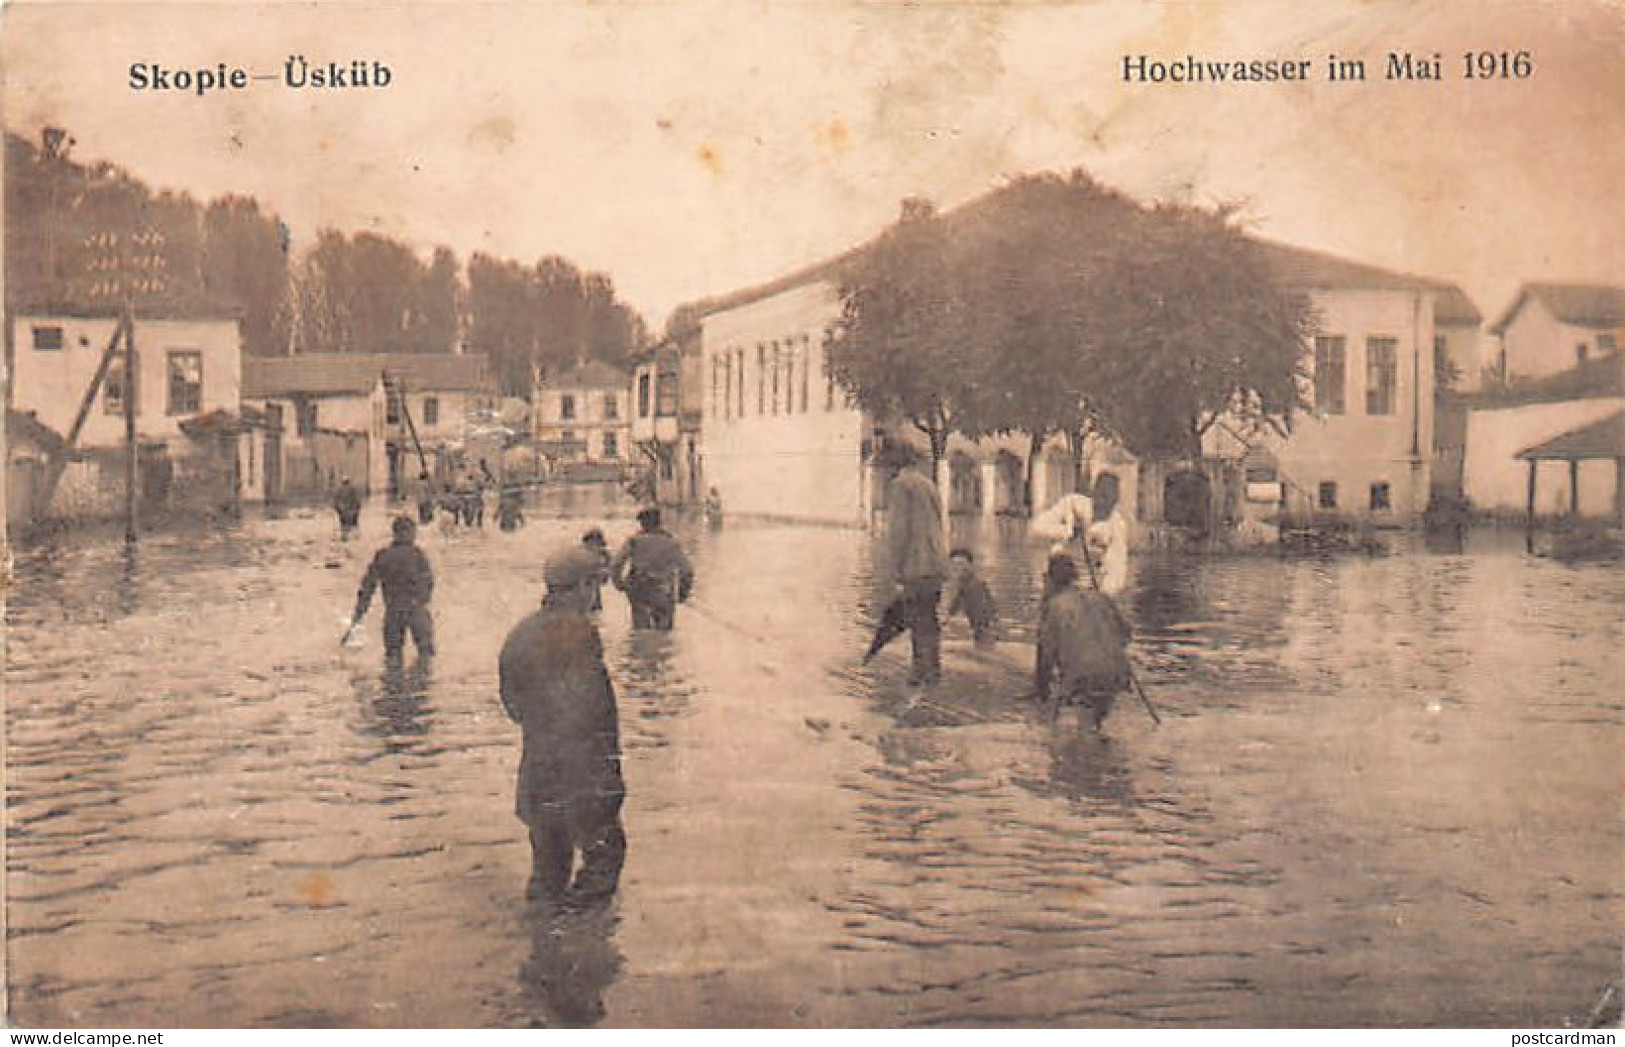 Macedonia - SKOPJE Üsküb - The Flood In May 1916 - North Macedonia